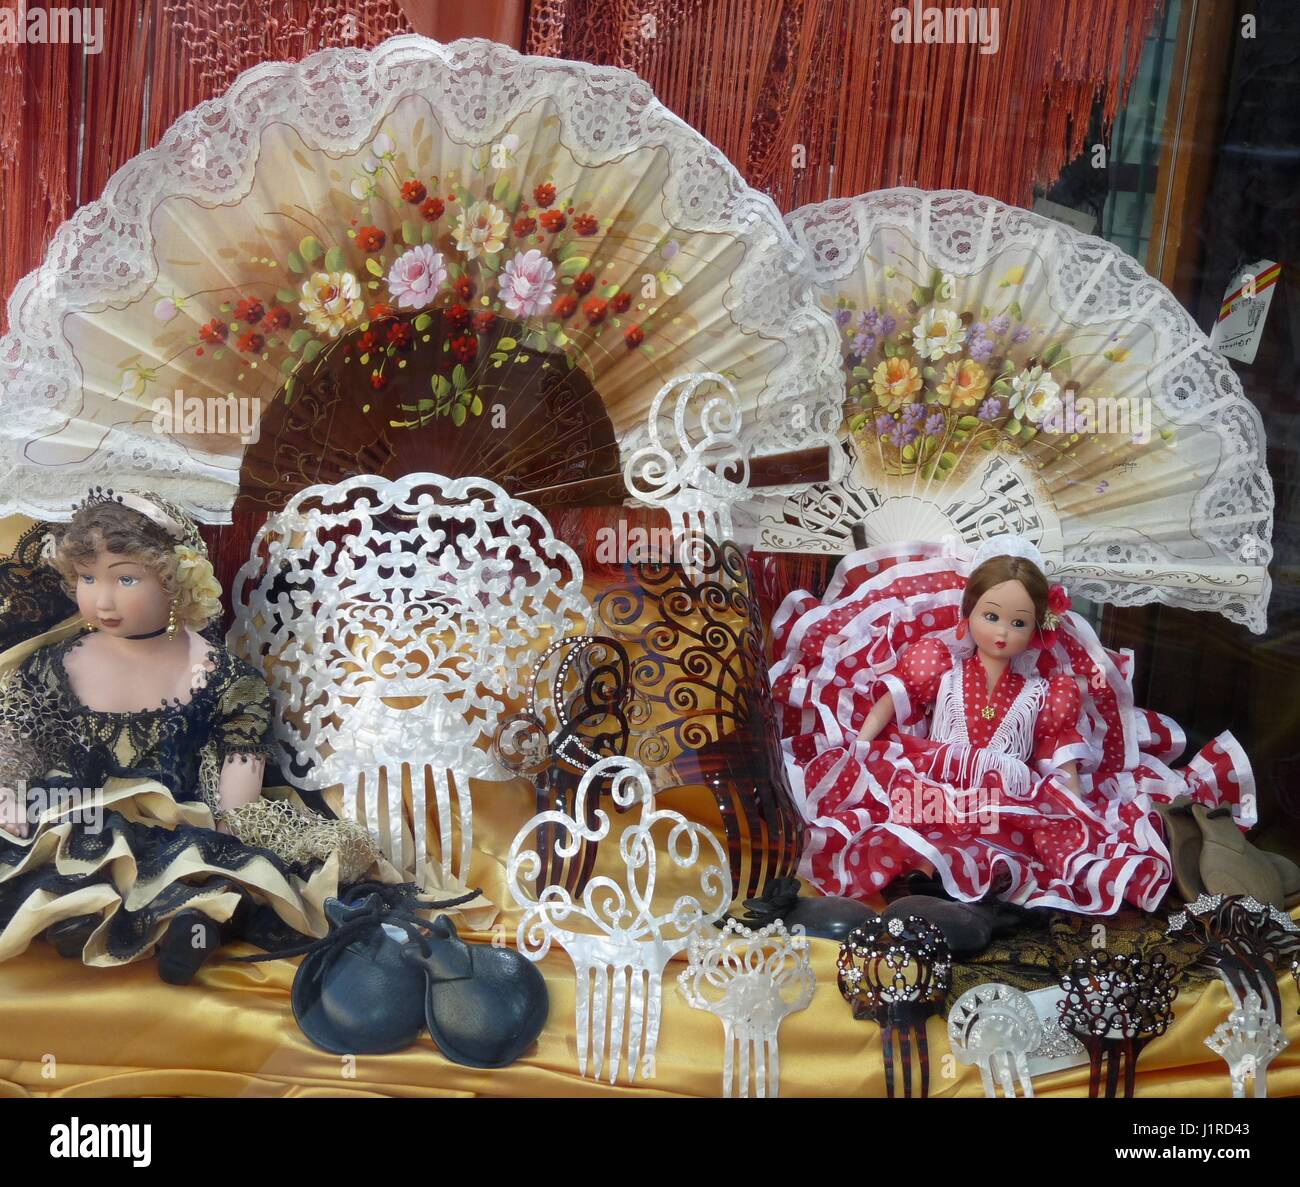 Affichage de fantaisie accessoires flamenco espagnol (fans, castagnettes, flamenca, peignes) pour les femmes, qui rappelle la foire de printemps de Séville Banque D'Images